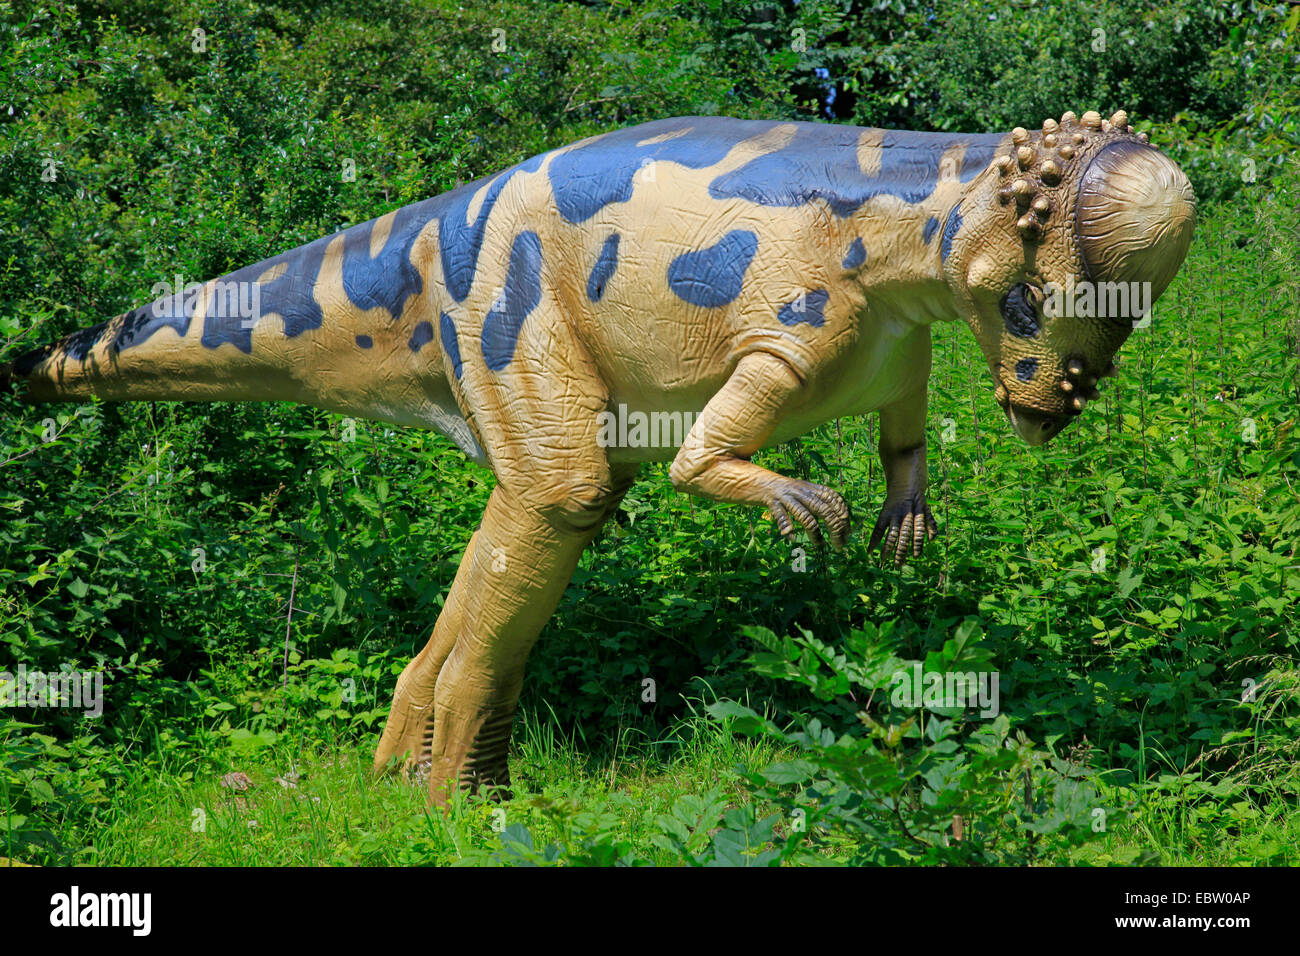 Pachycephalosaurus immagini e fotografie stock ad alta risoluzione - Alamy